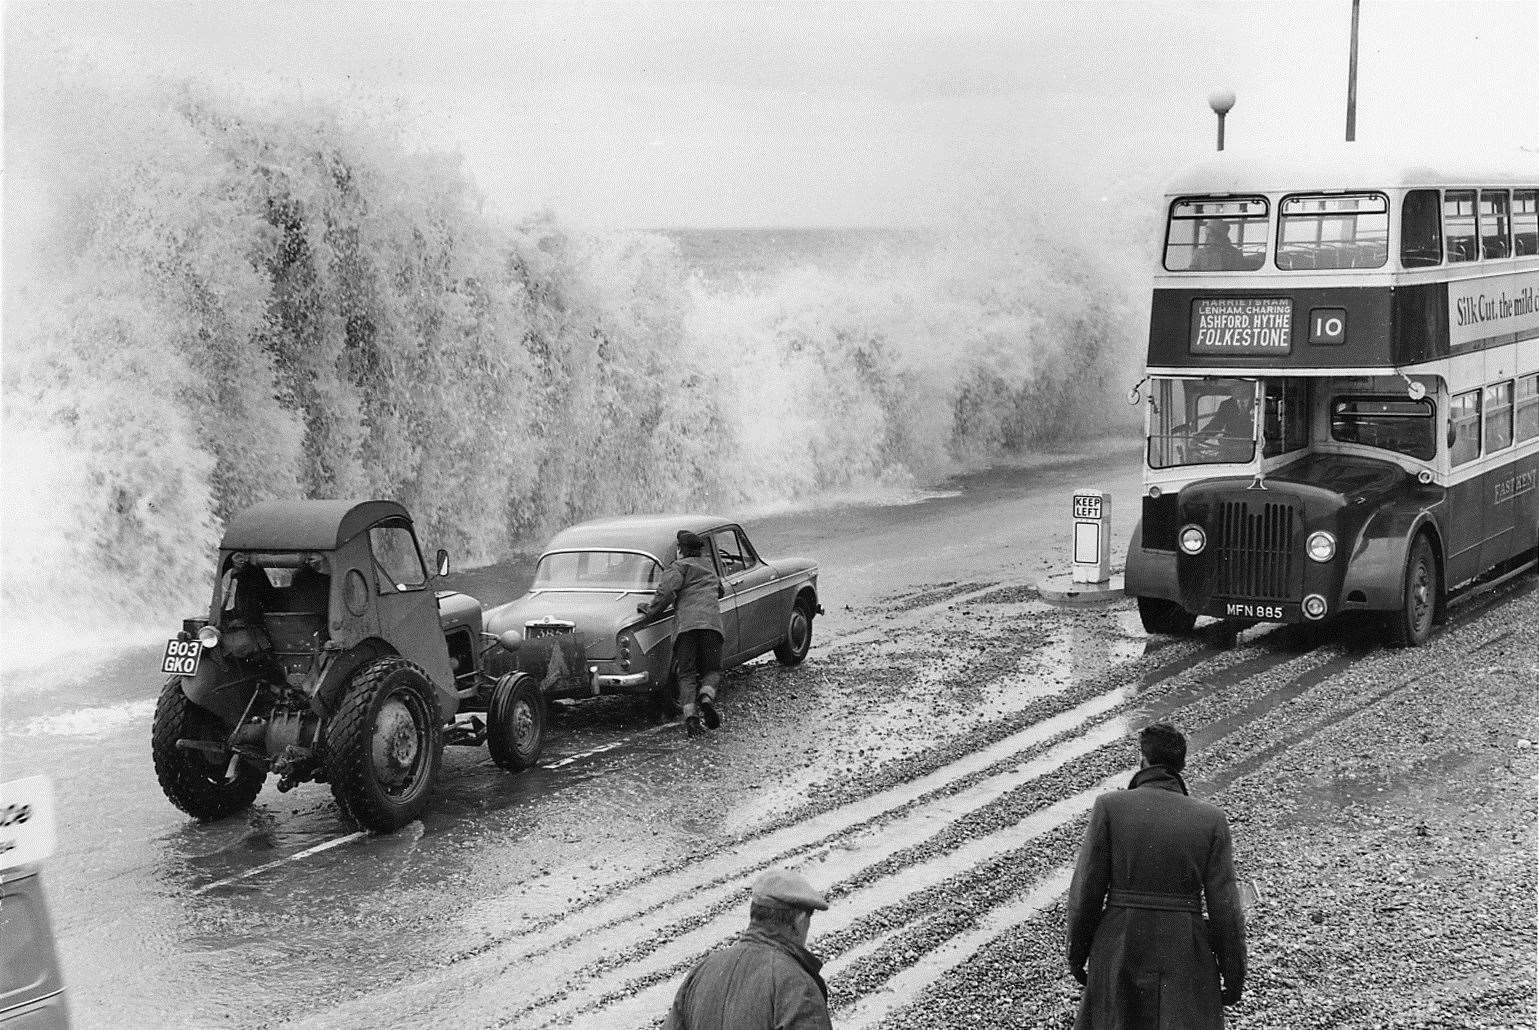 Rough seas in Folkestone in 1964